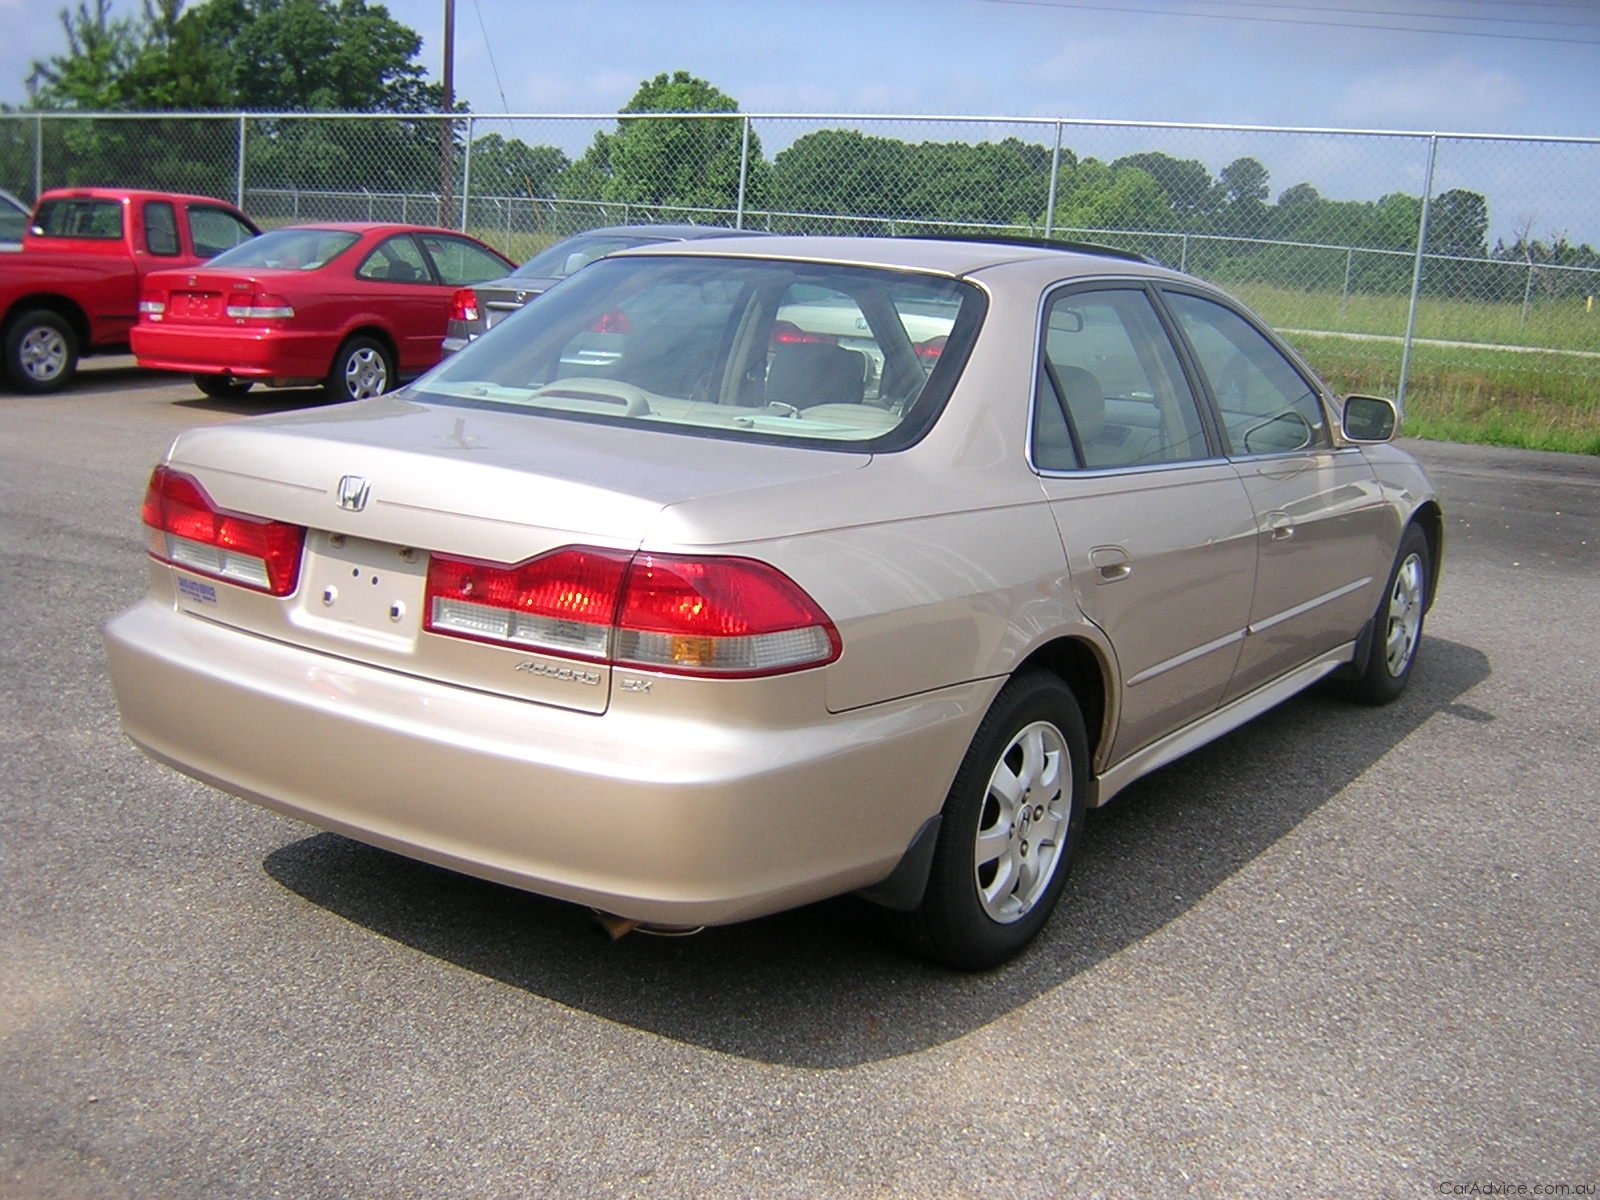 2001-02 Honda Accord, Civic facing airbag recall - photos ...